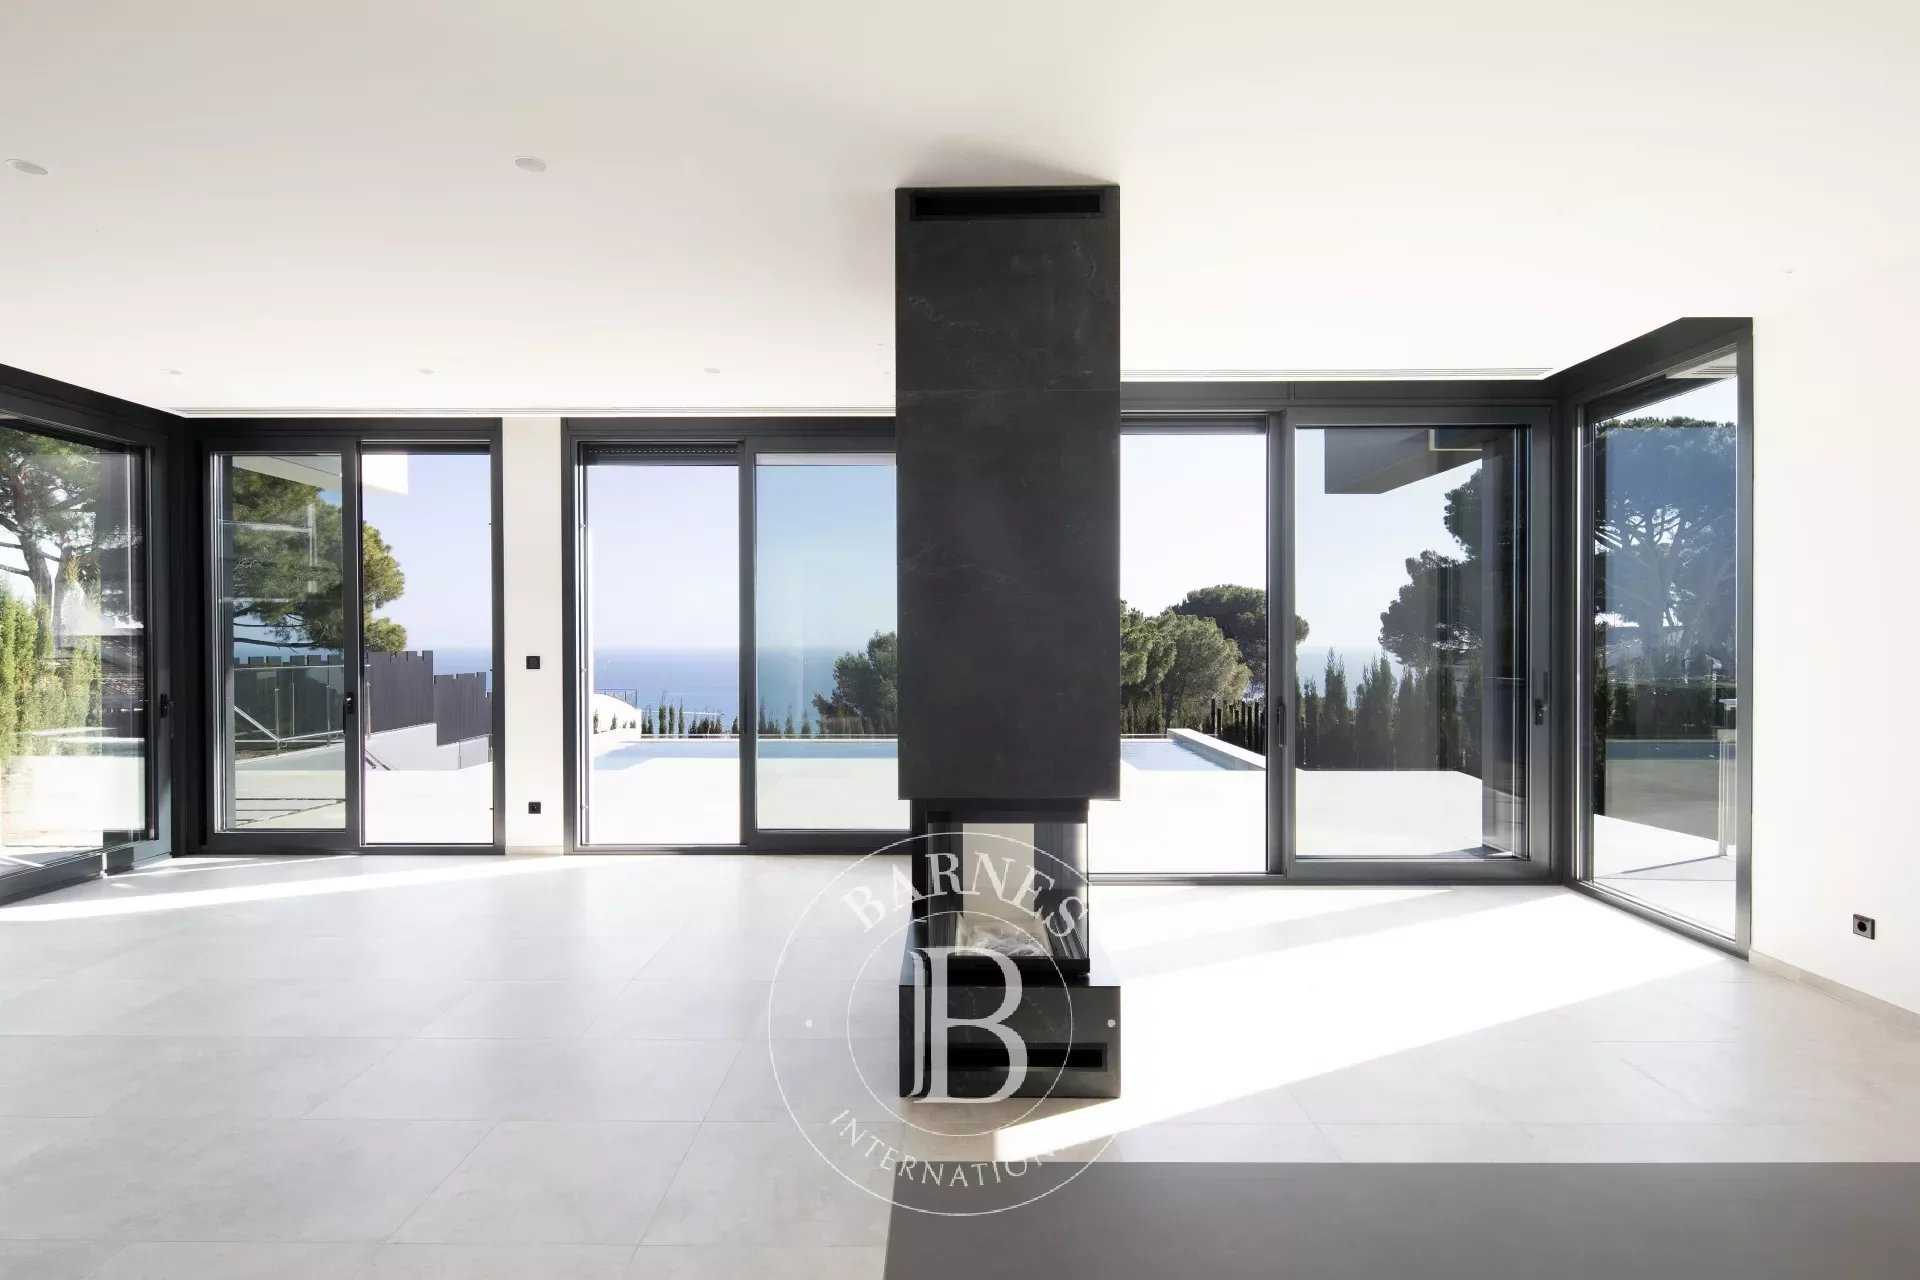 Beautiful new villa for sale in Caldes d'Estrac, Barcelona. Caldes d'Estrac